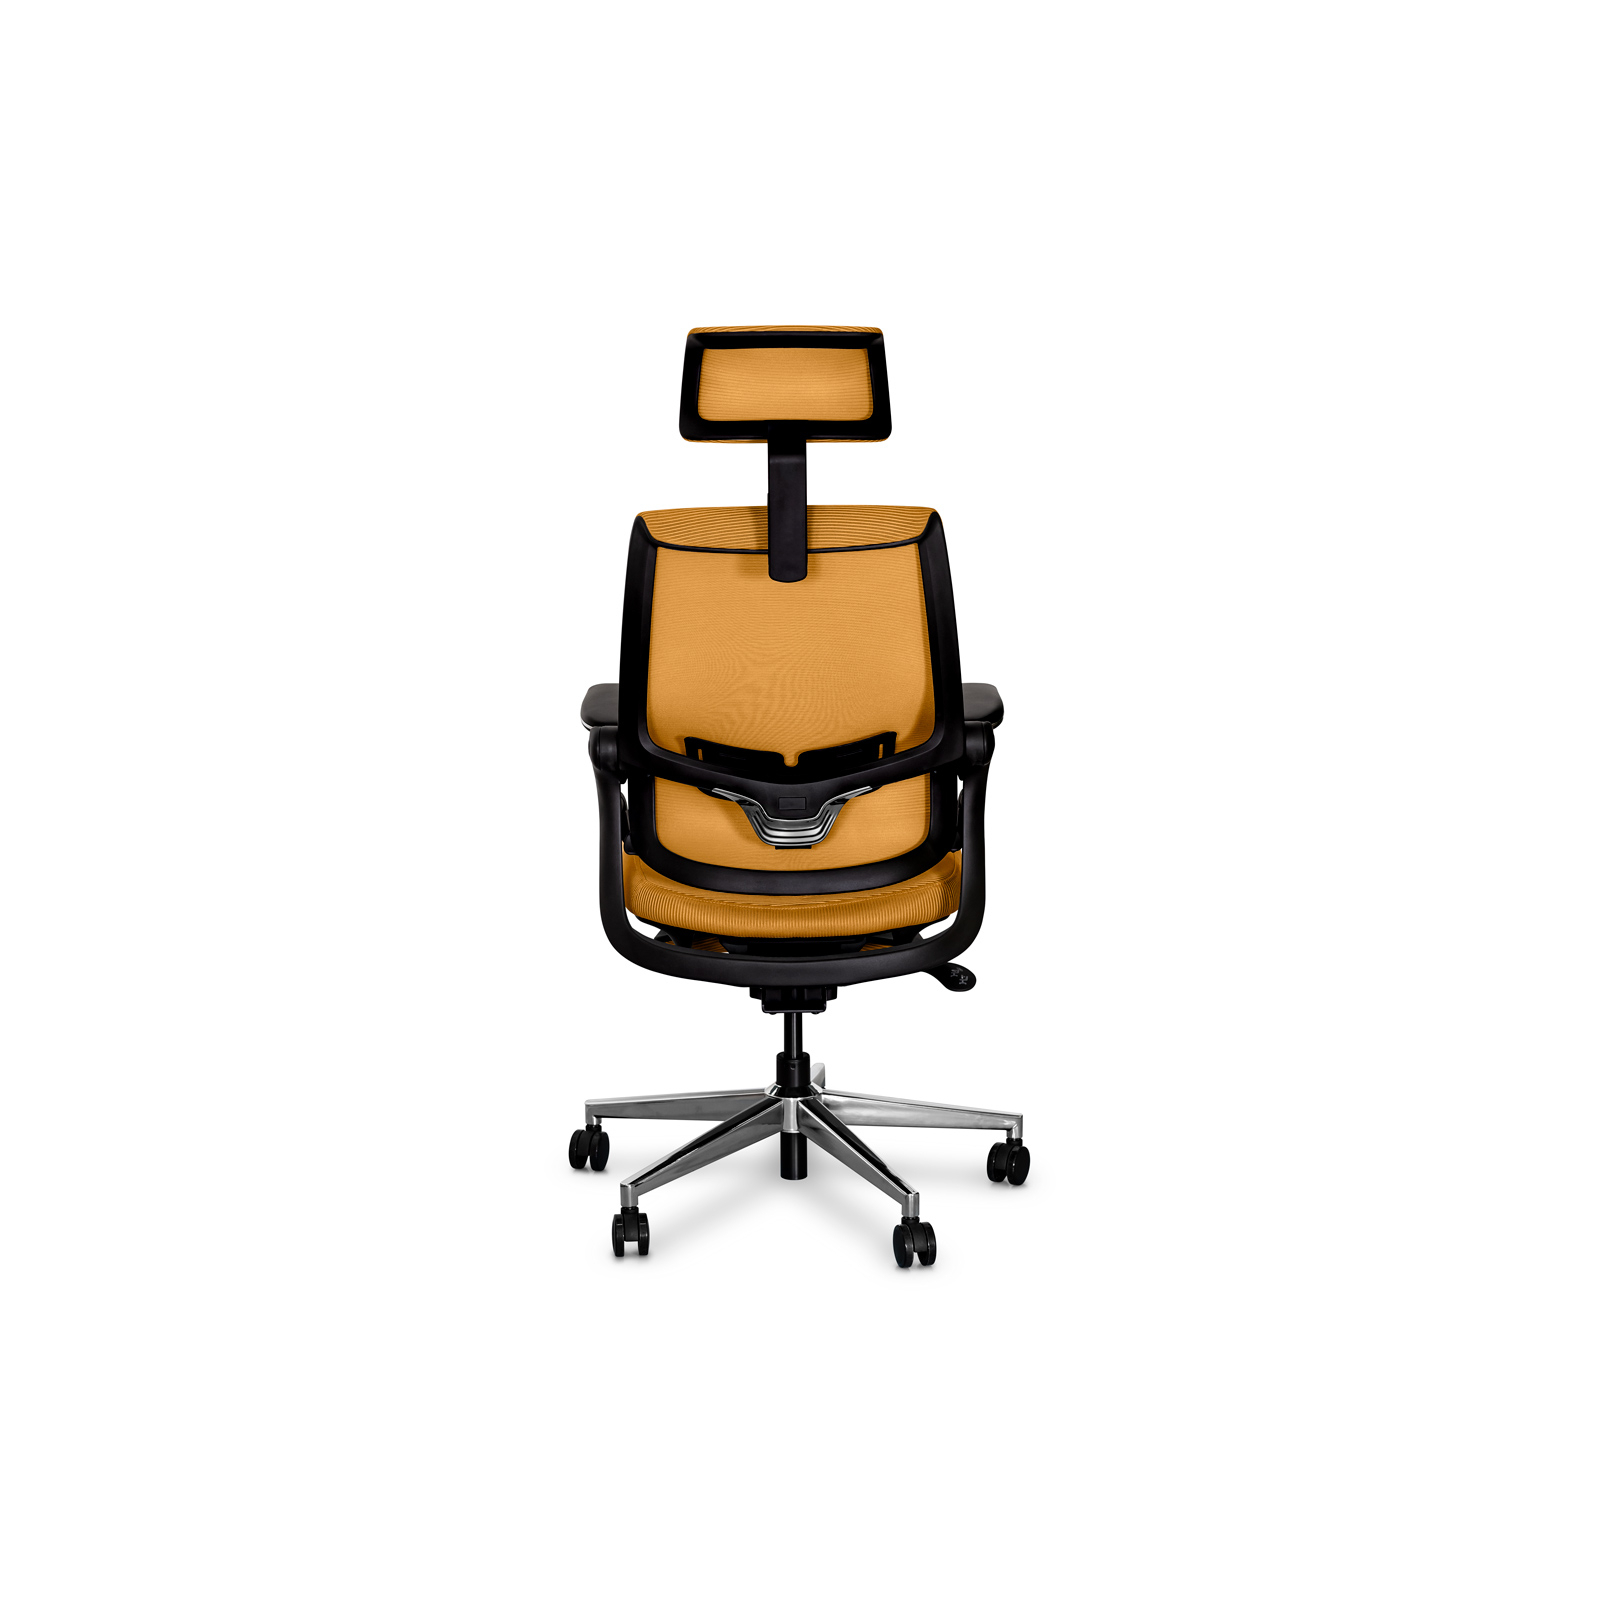 Офісне крісло Mealux Y-565 KY зображення 6